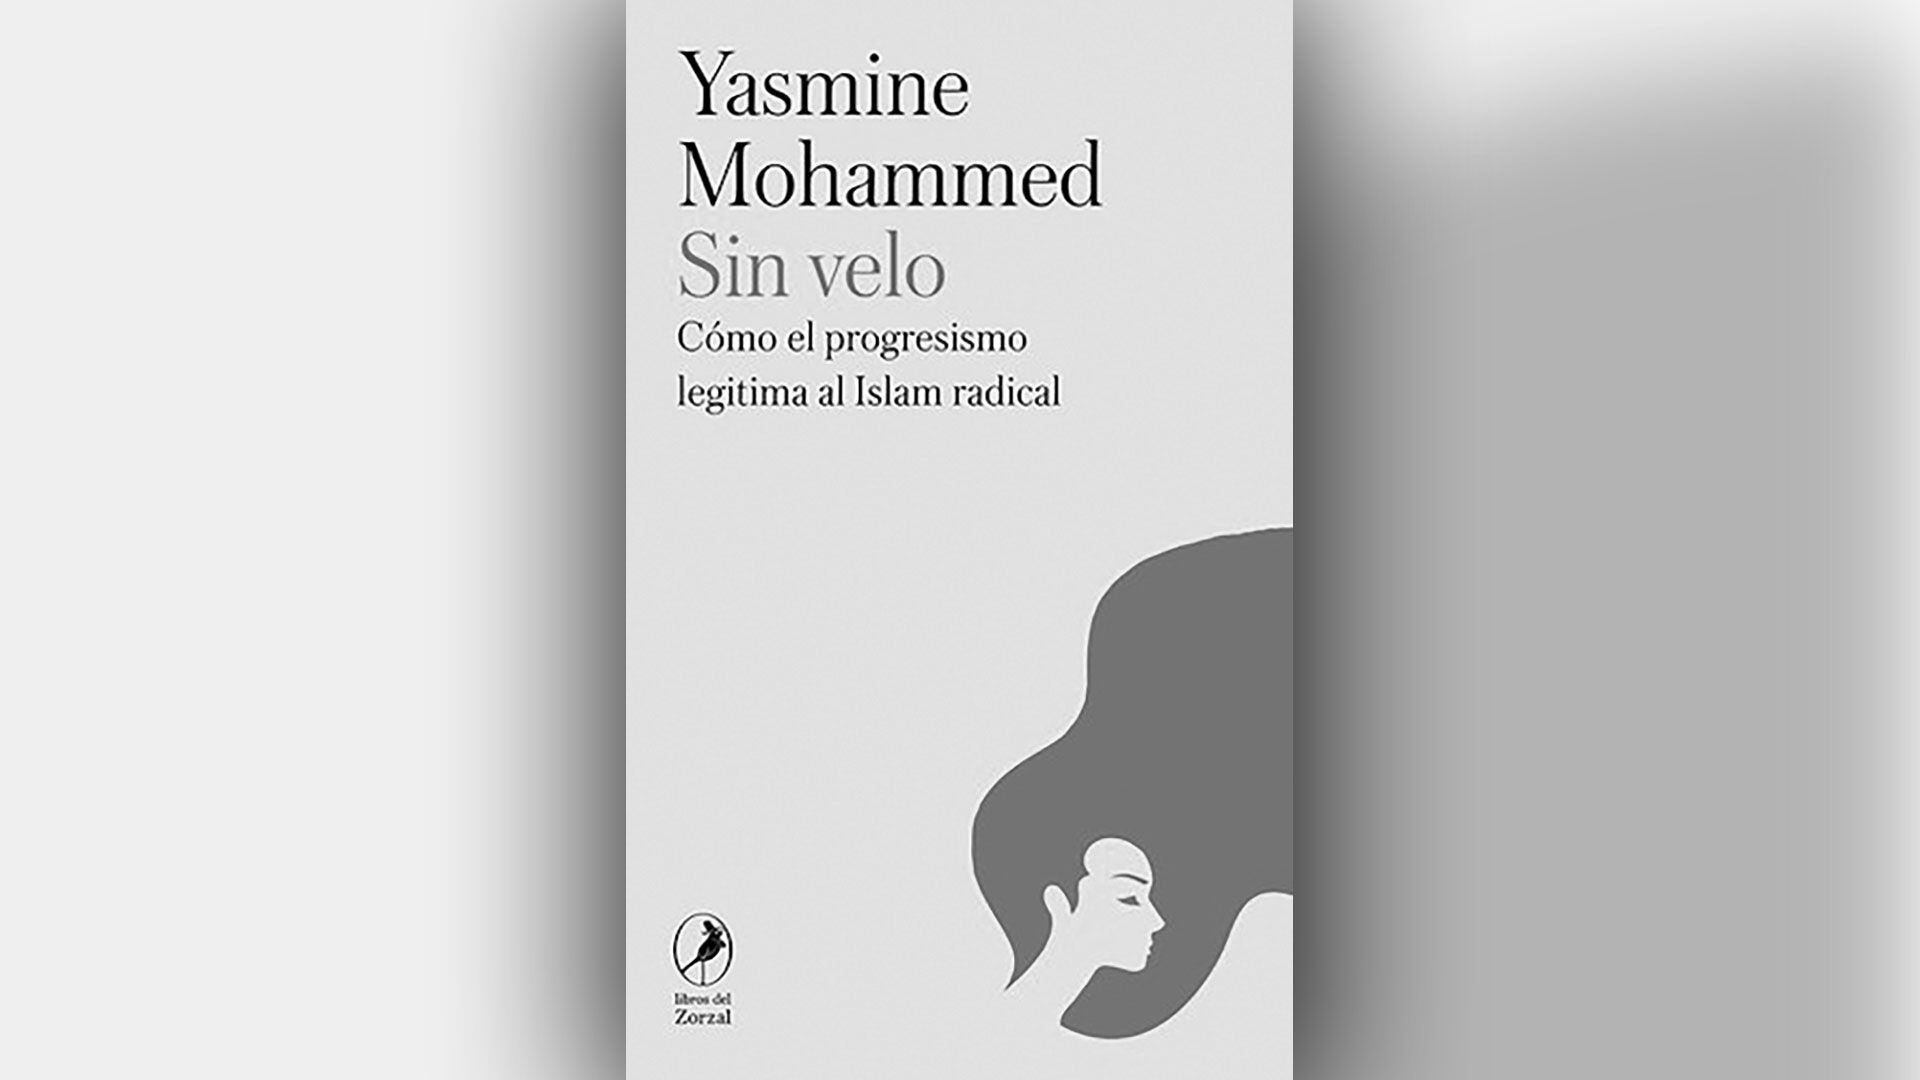 Yasmine Mohammed